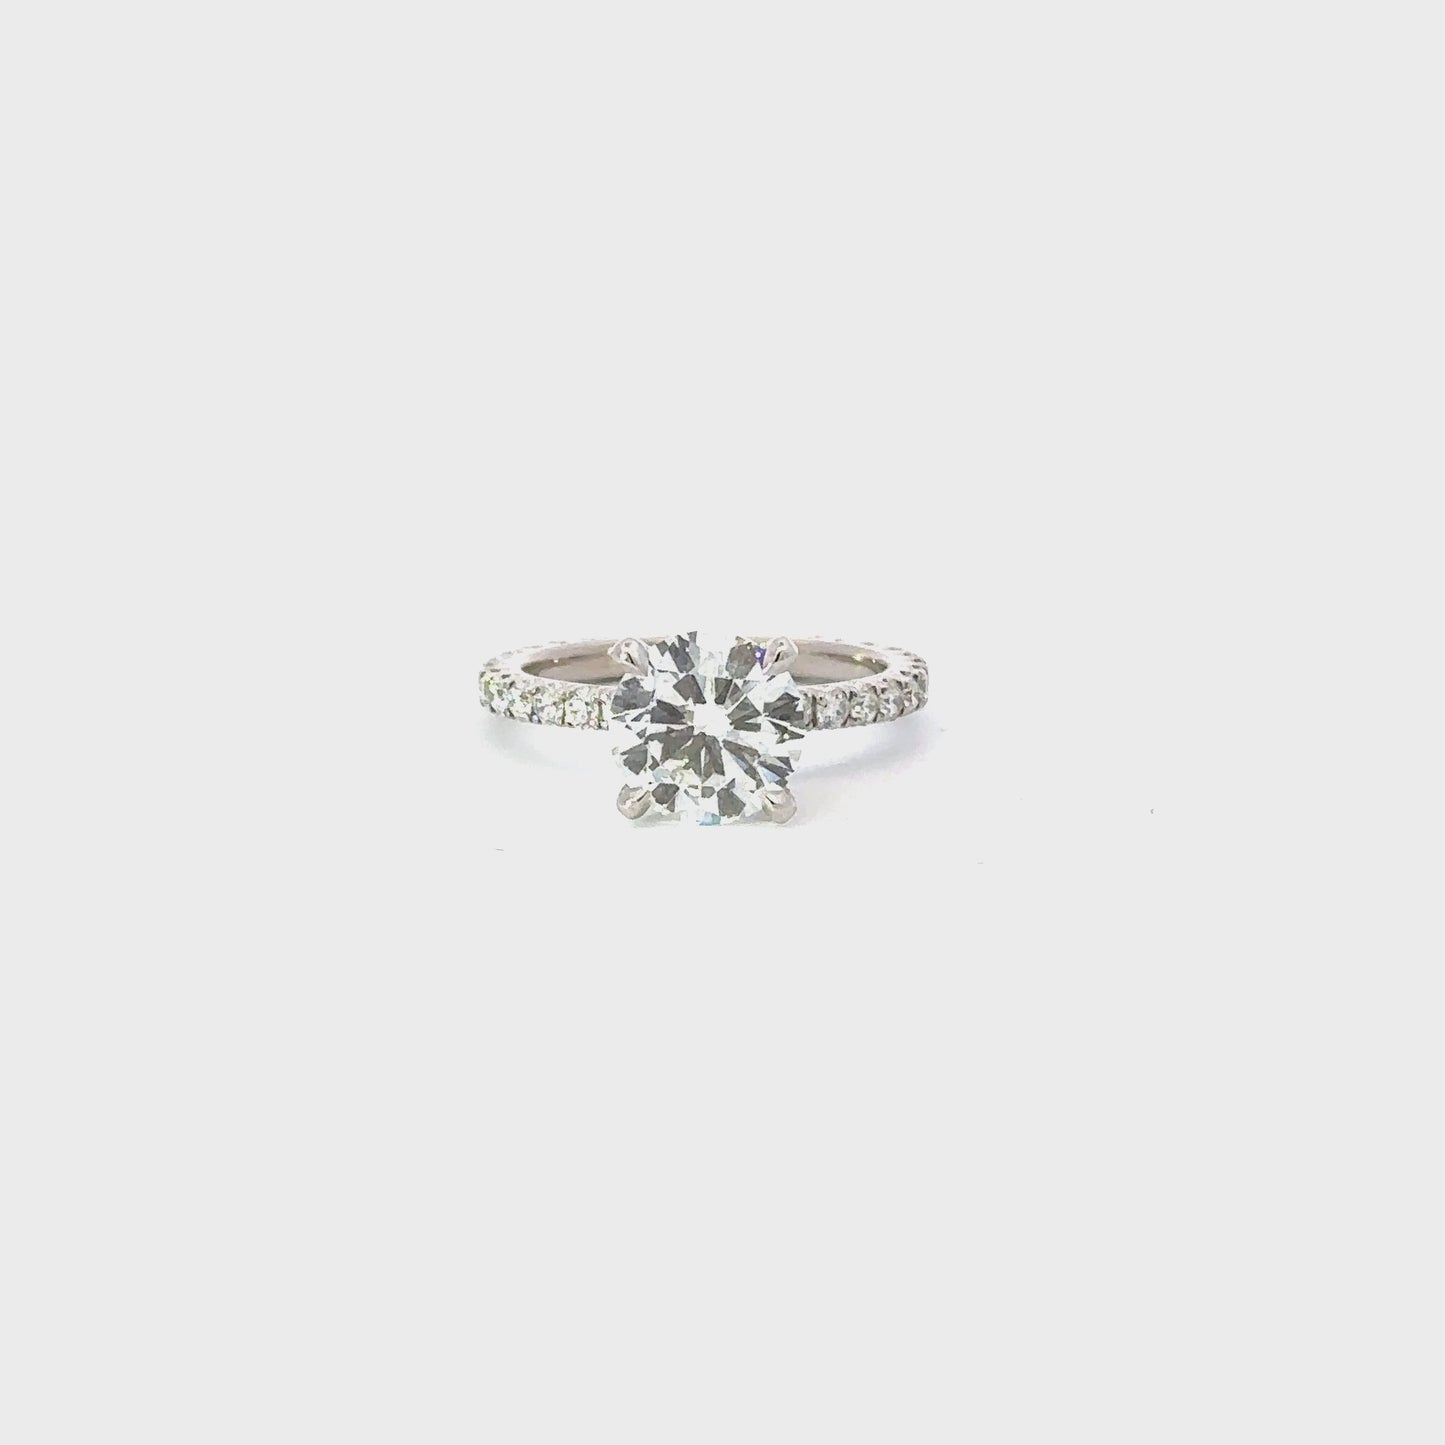 2.03 Carat Round Natural Diamond Engagement Ring